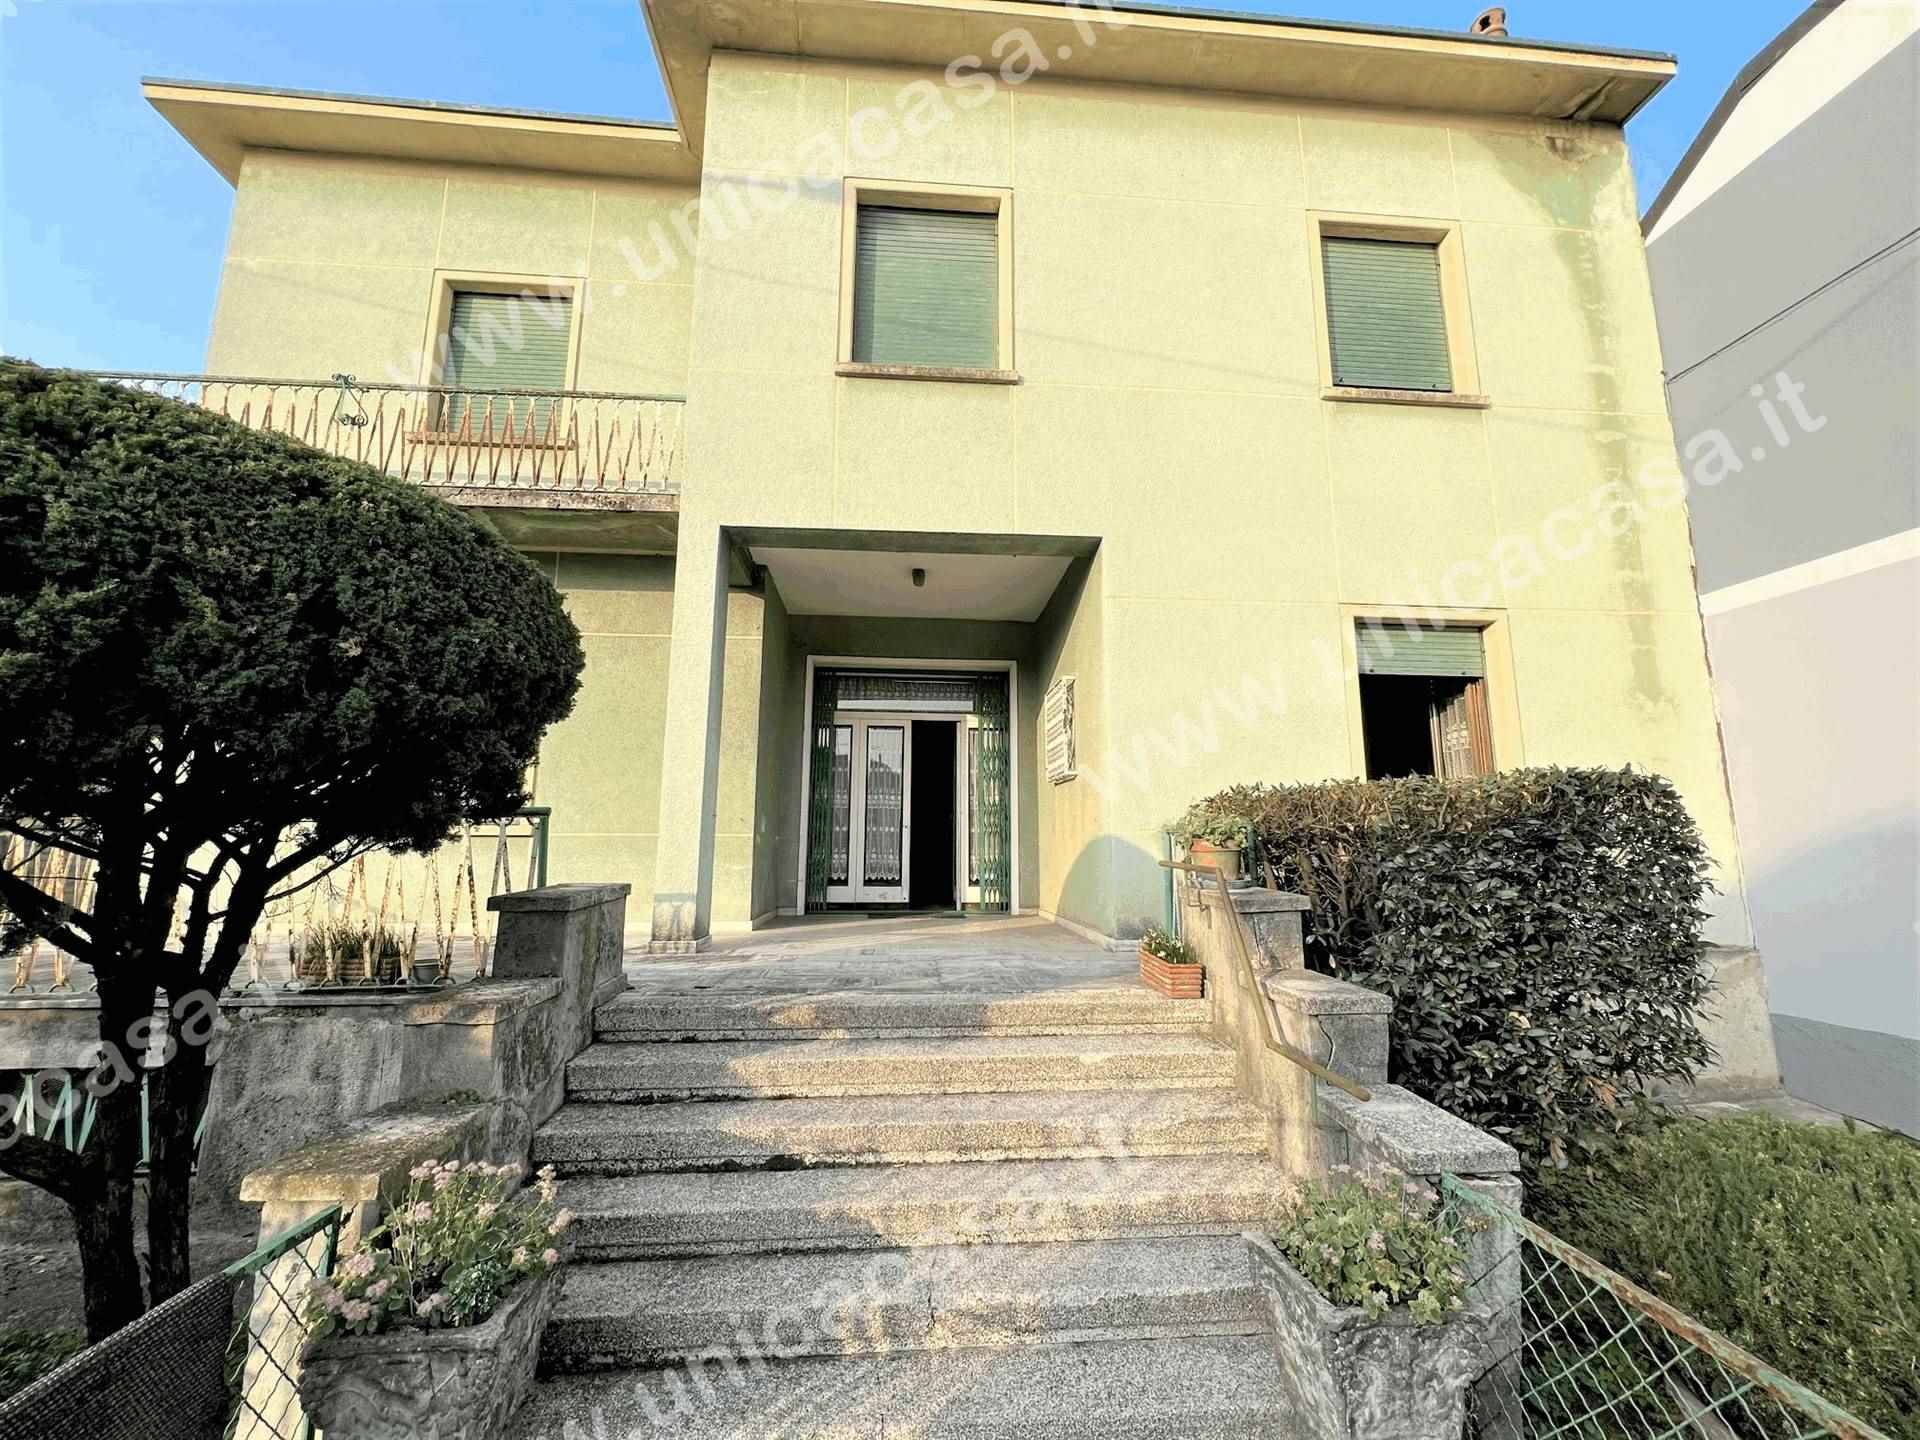 Villa in vendita a Fara Gera d'Adda, 10 locali, prezzo € 450.000 | PortaleAgenzieImmobiliari.it